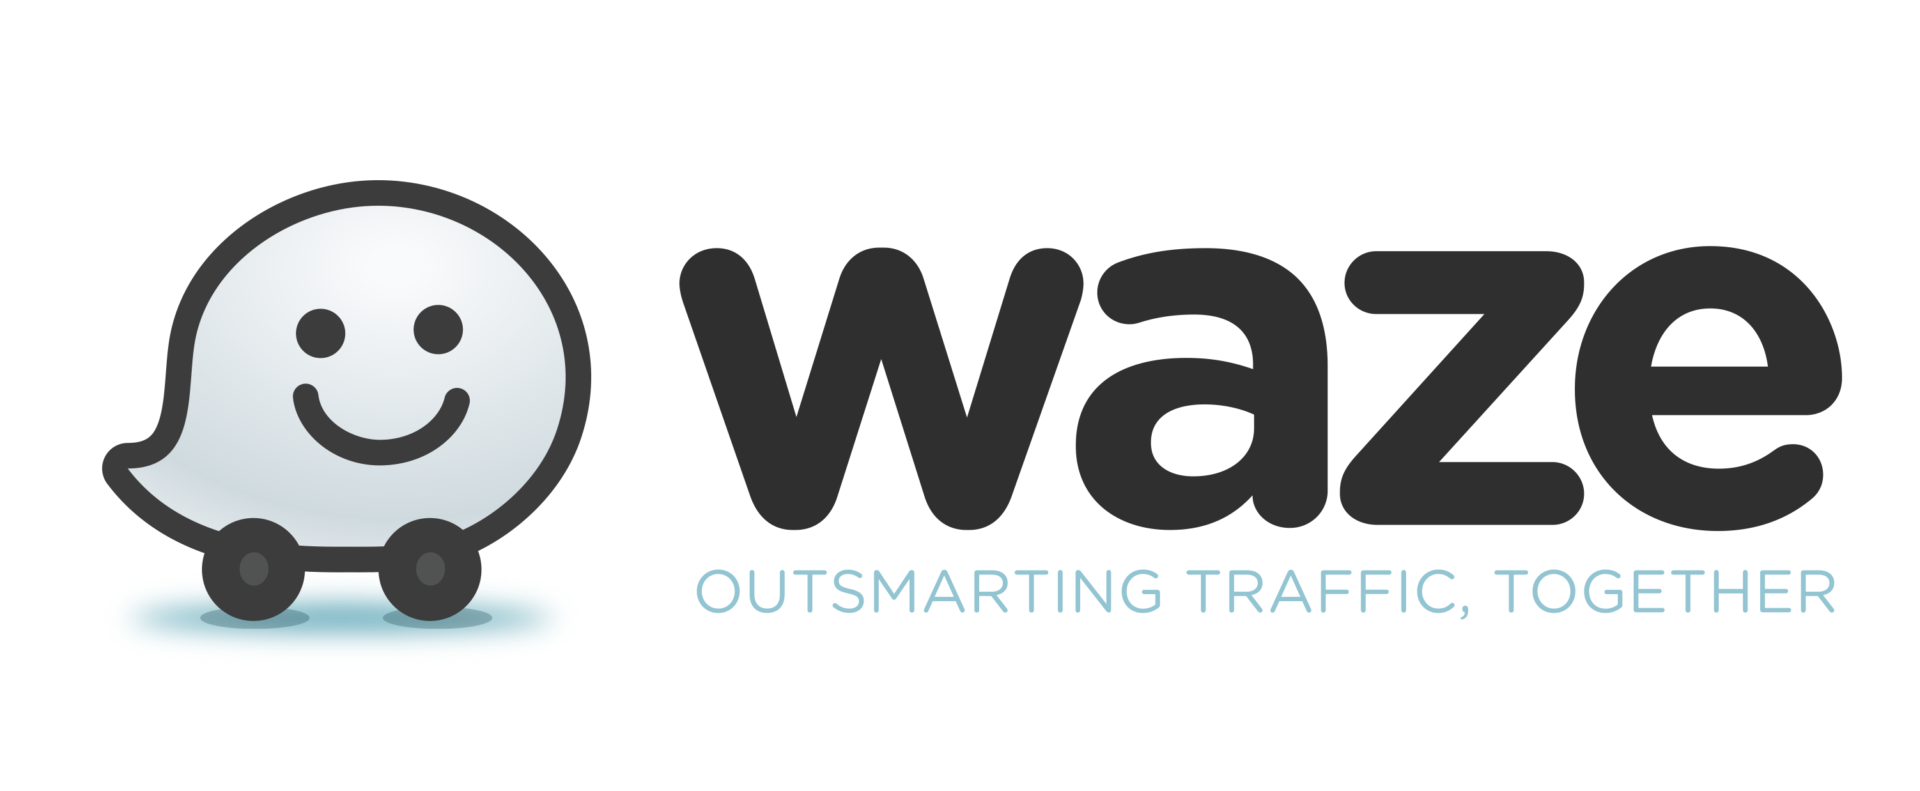 Polițiștii folosesc Waze pentru a-și ascunde radarele